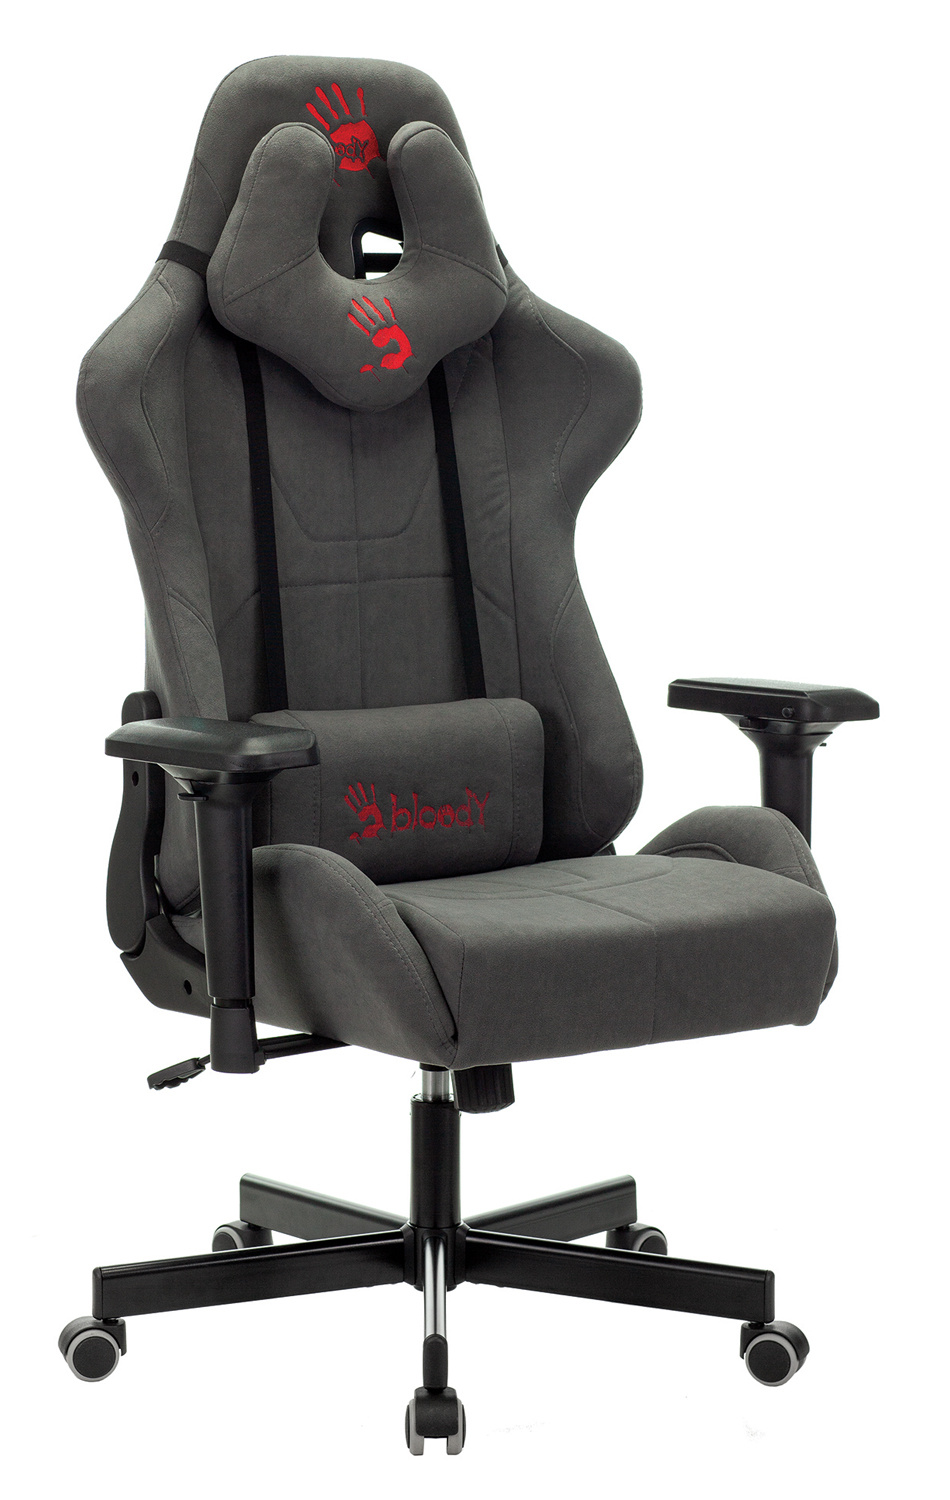 Игровые кресла A4TECH -  игровое кресло A4TECH, цены  на .